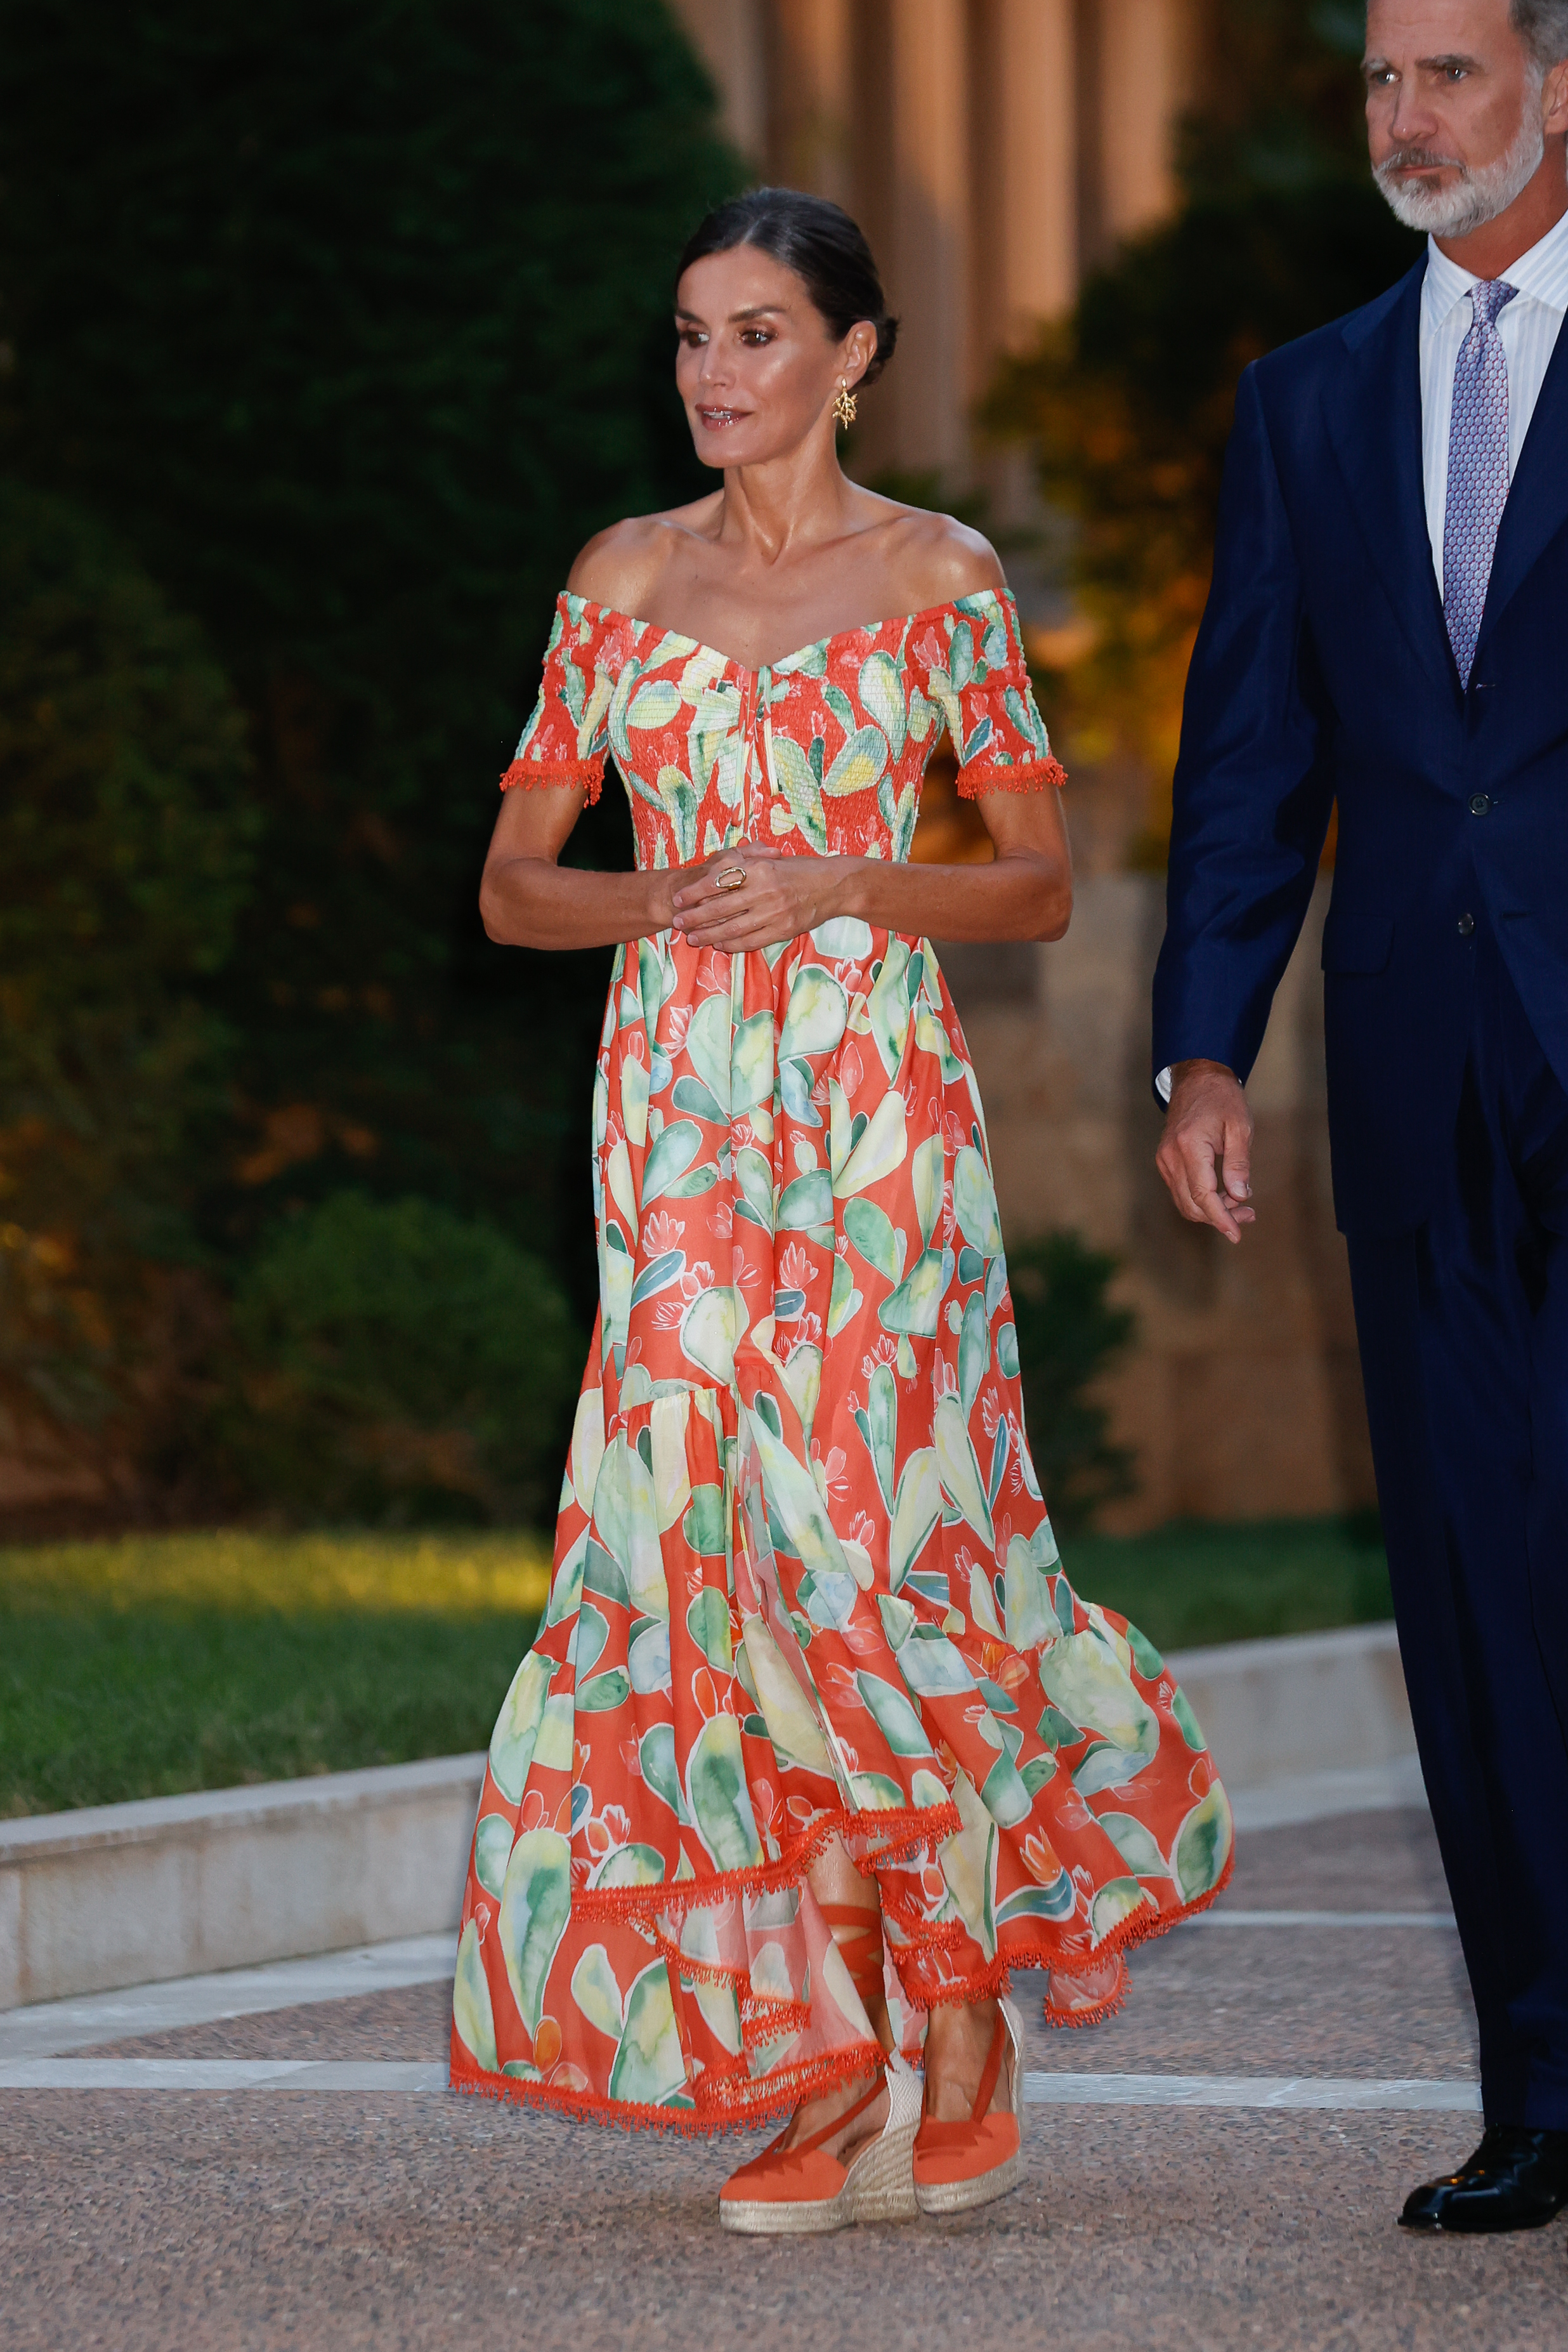 La Reina Letizia apuesta todo al naranja en Marivent con un vestido made  in Spain y guiño a Mallorca  Reina Letizia